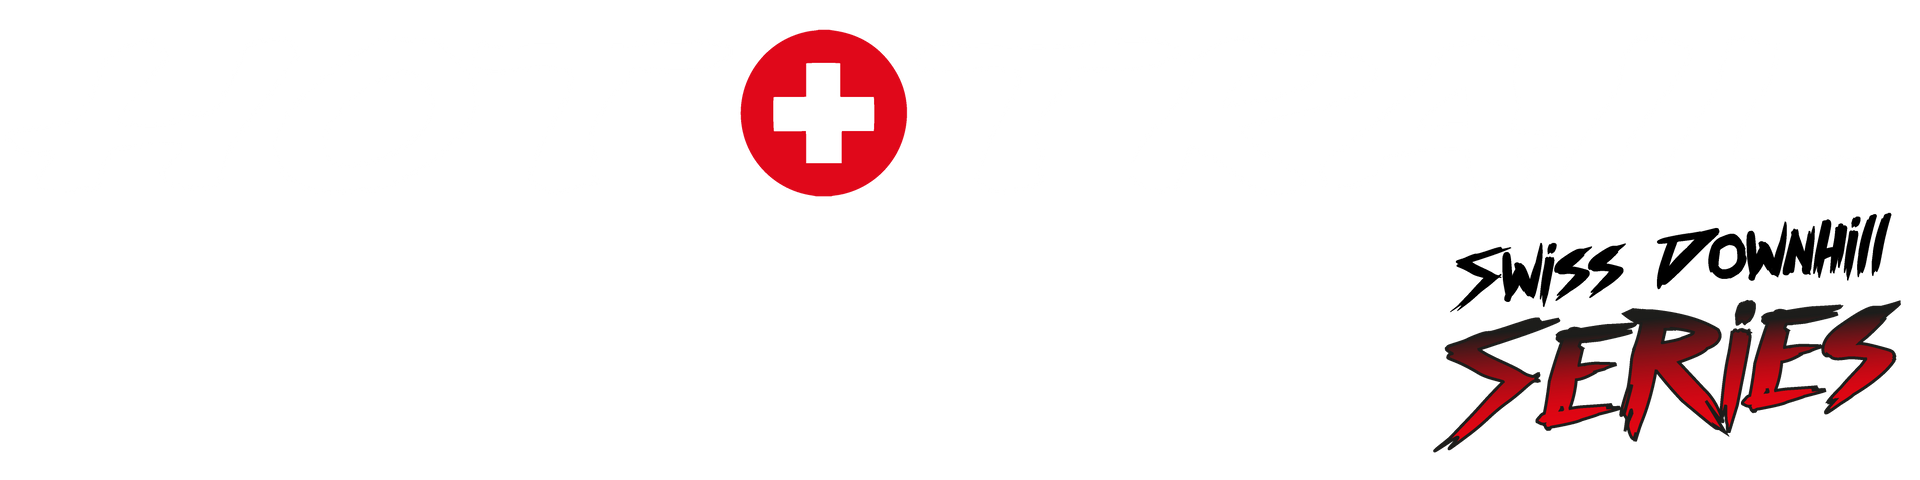 Logo_hottrailseries